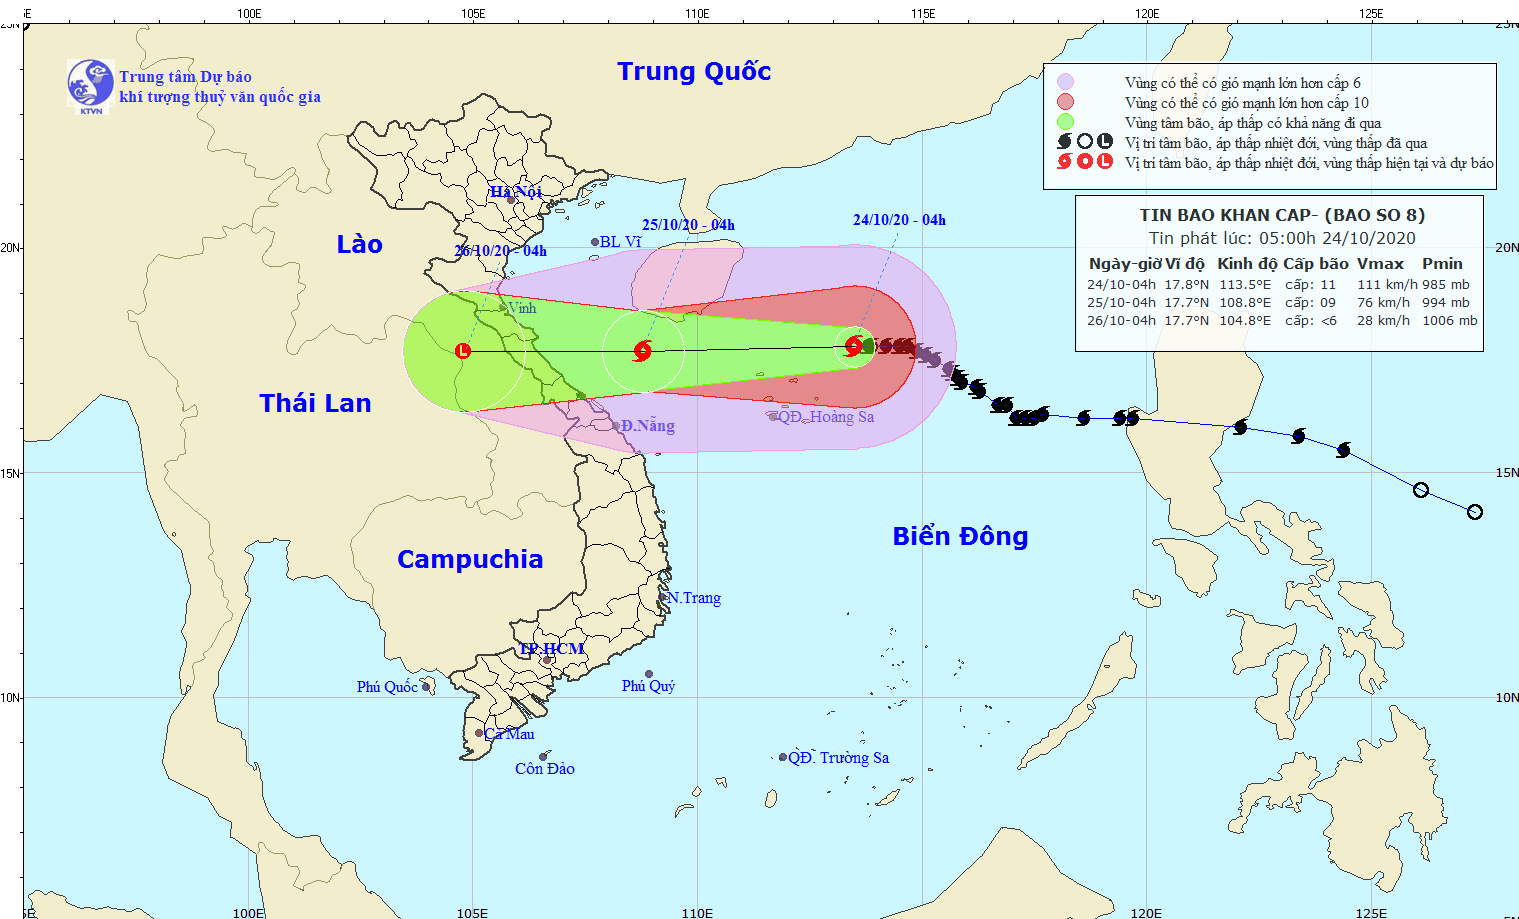 Bão số 8 sẽ gây gió mạnh giật cấp 9 trên vùng biển từ Quảng Trị - Thừa Thiên Huế